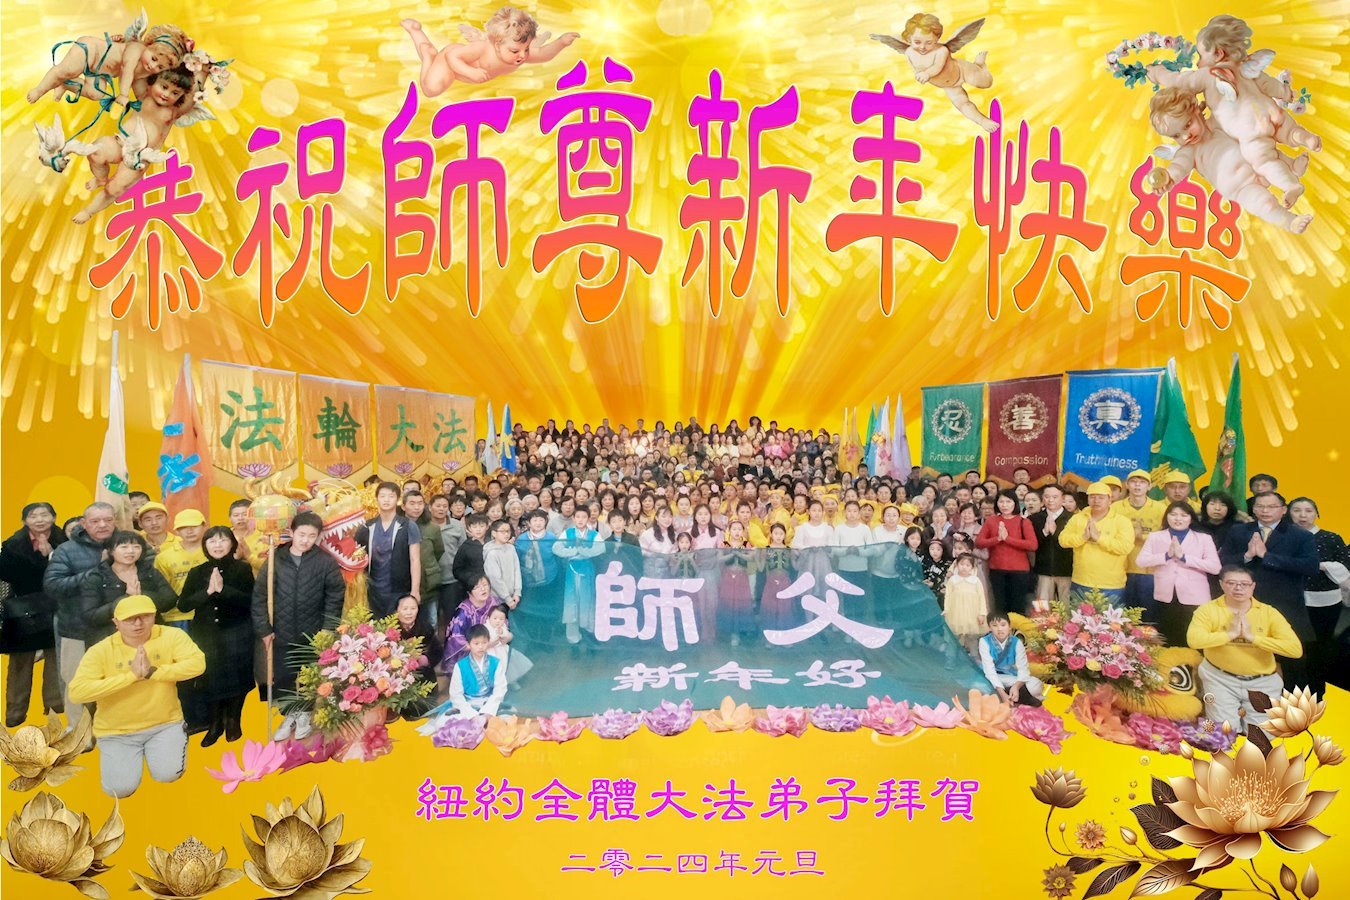 Image for article Les pratiquants de Falun Dafa à New York souhaitent respectueusement une Bonne Année à Maître Li Hongzhi